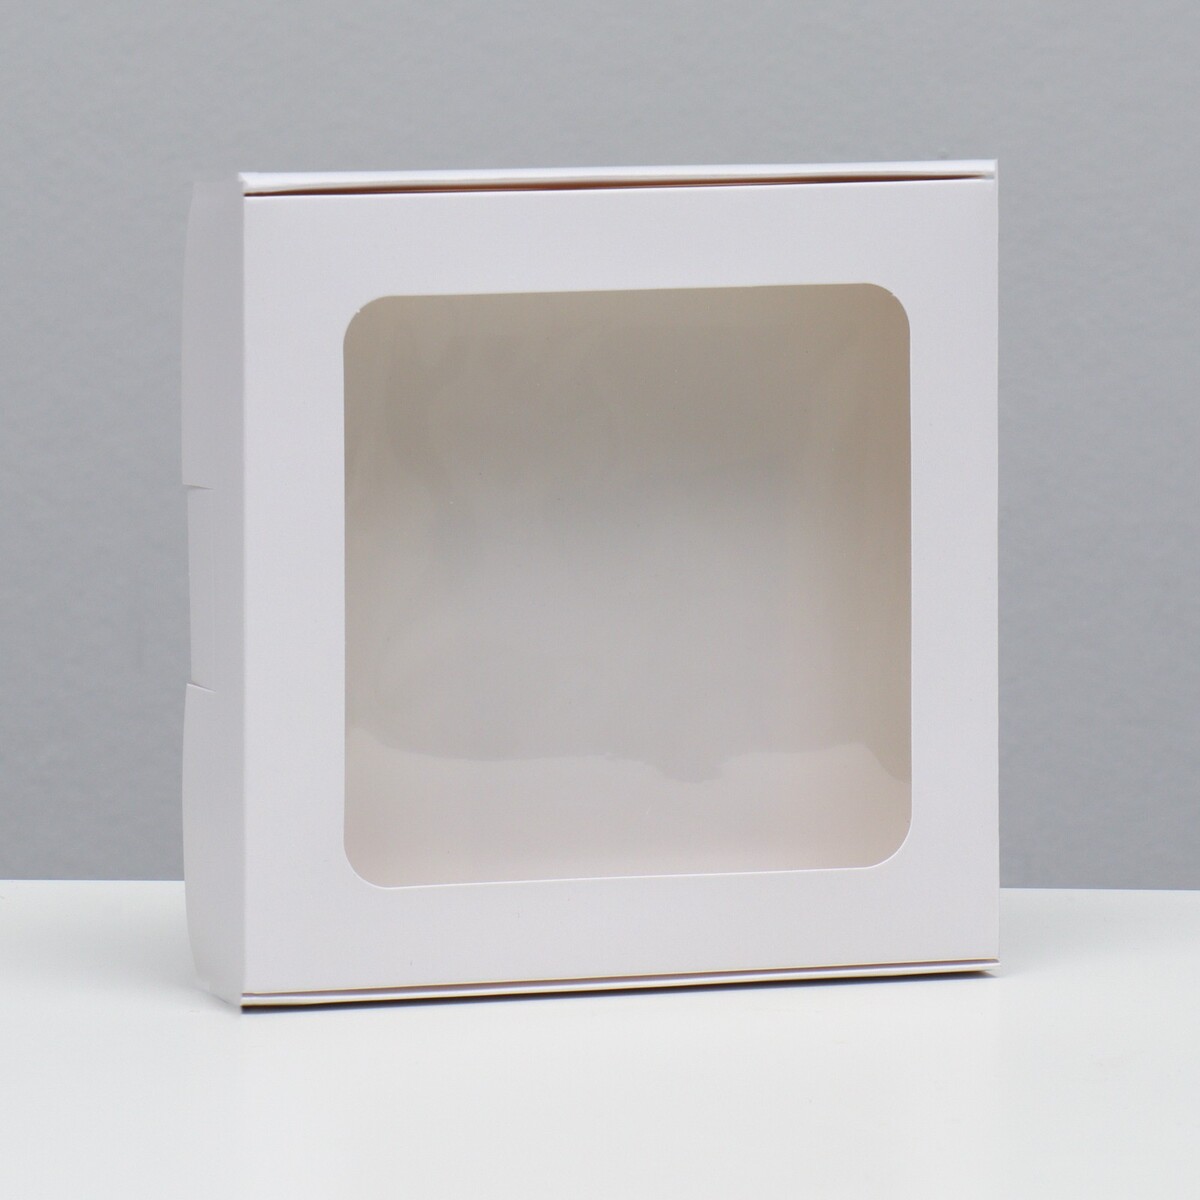 Коробка самосборная, белая, 16 х 16 х 3 см коробка самосборная дед мороз 11 х 8 х 2 см